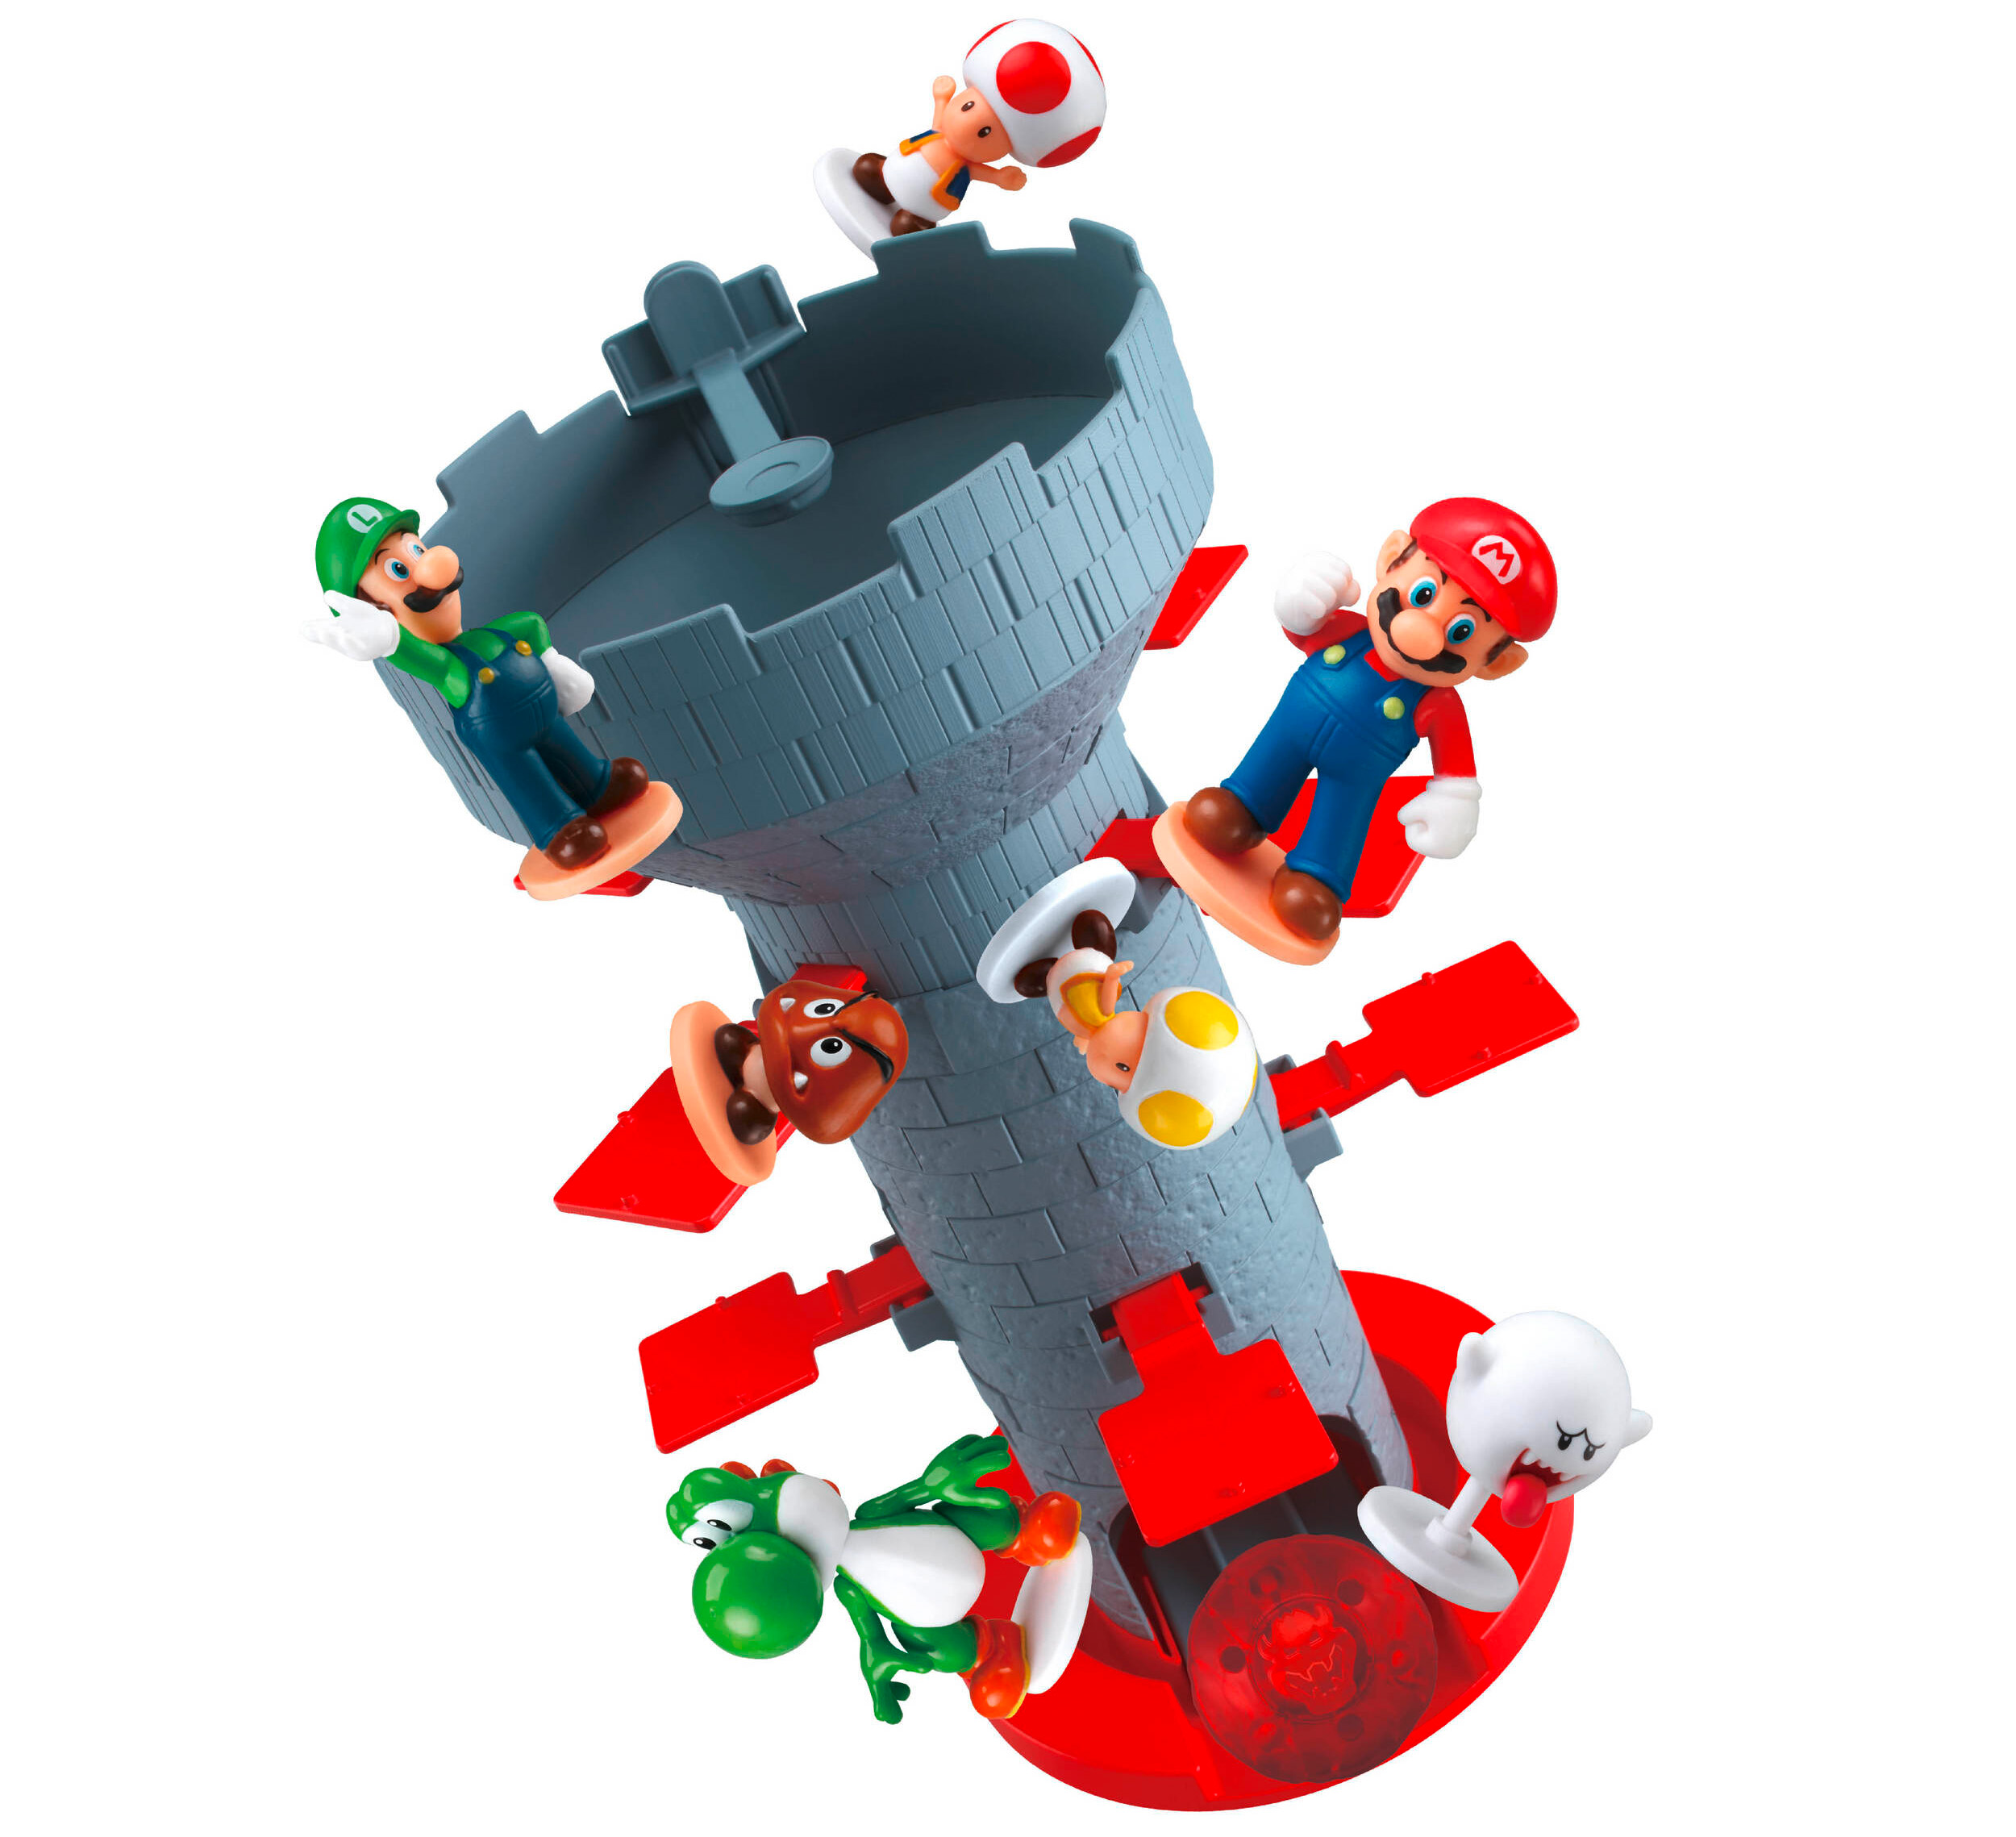 Super Mario™  Blow Up! Shaky Tower